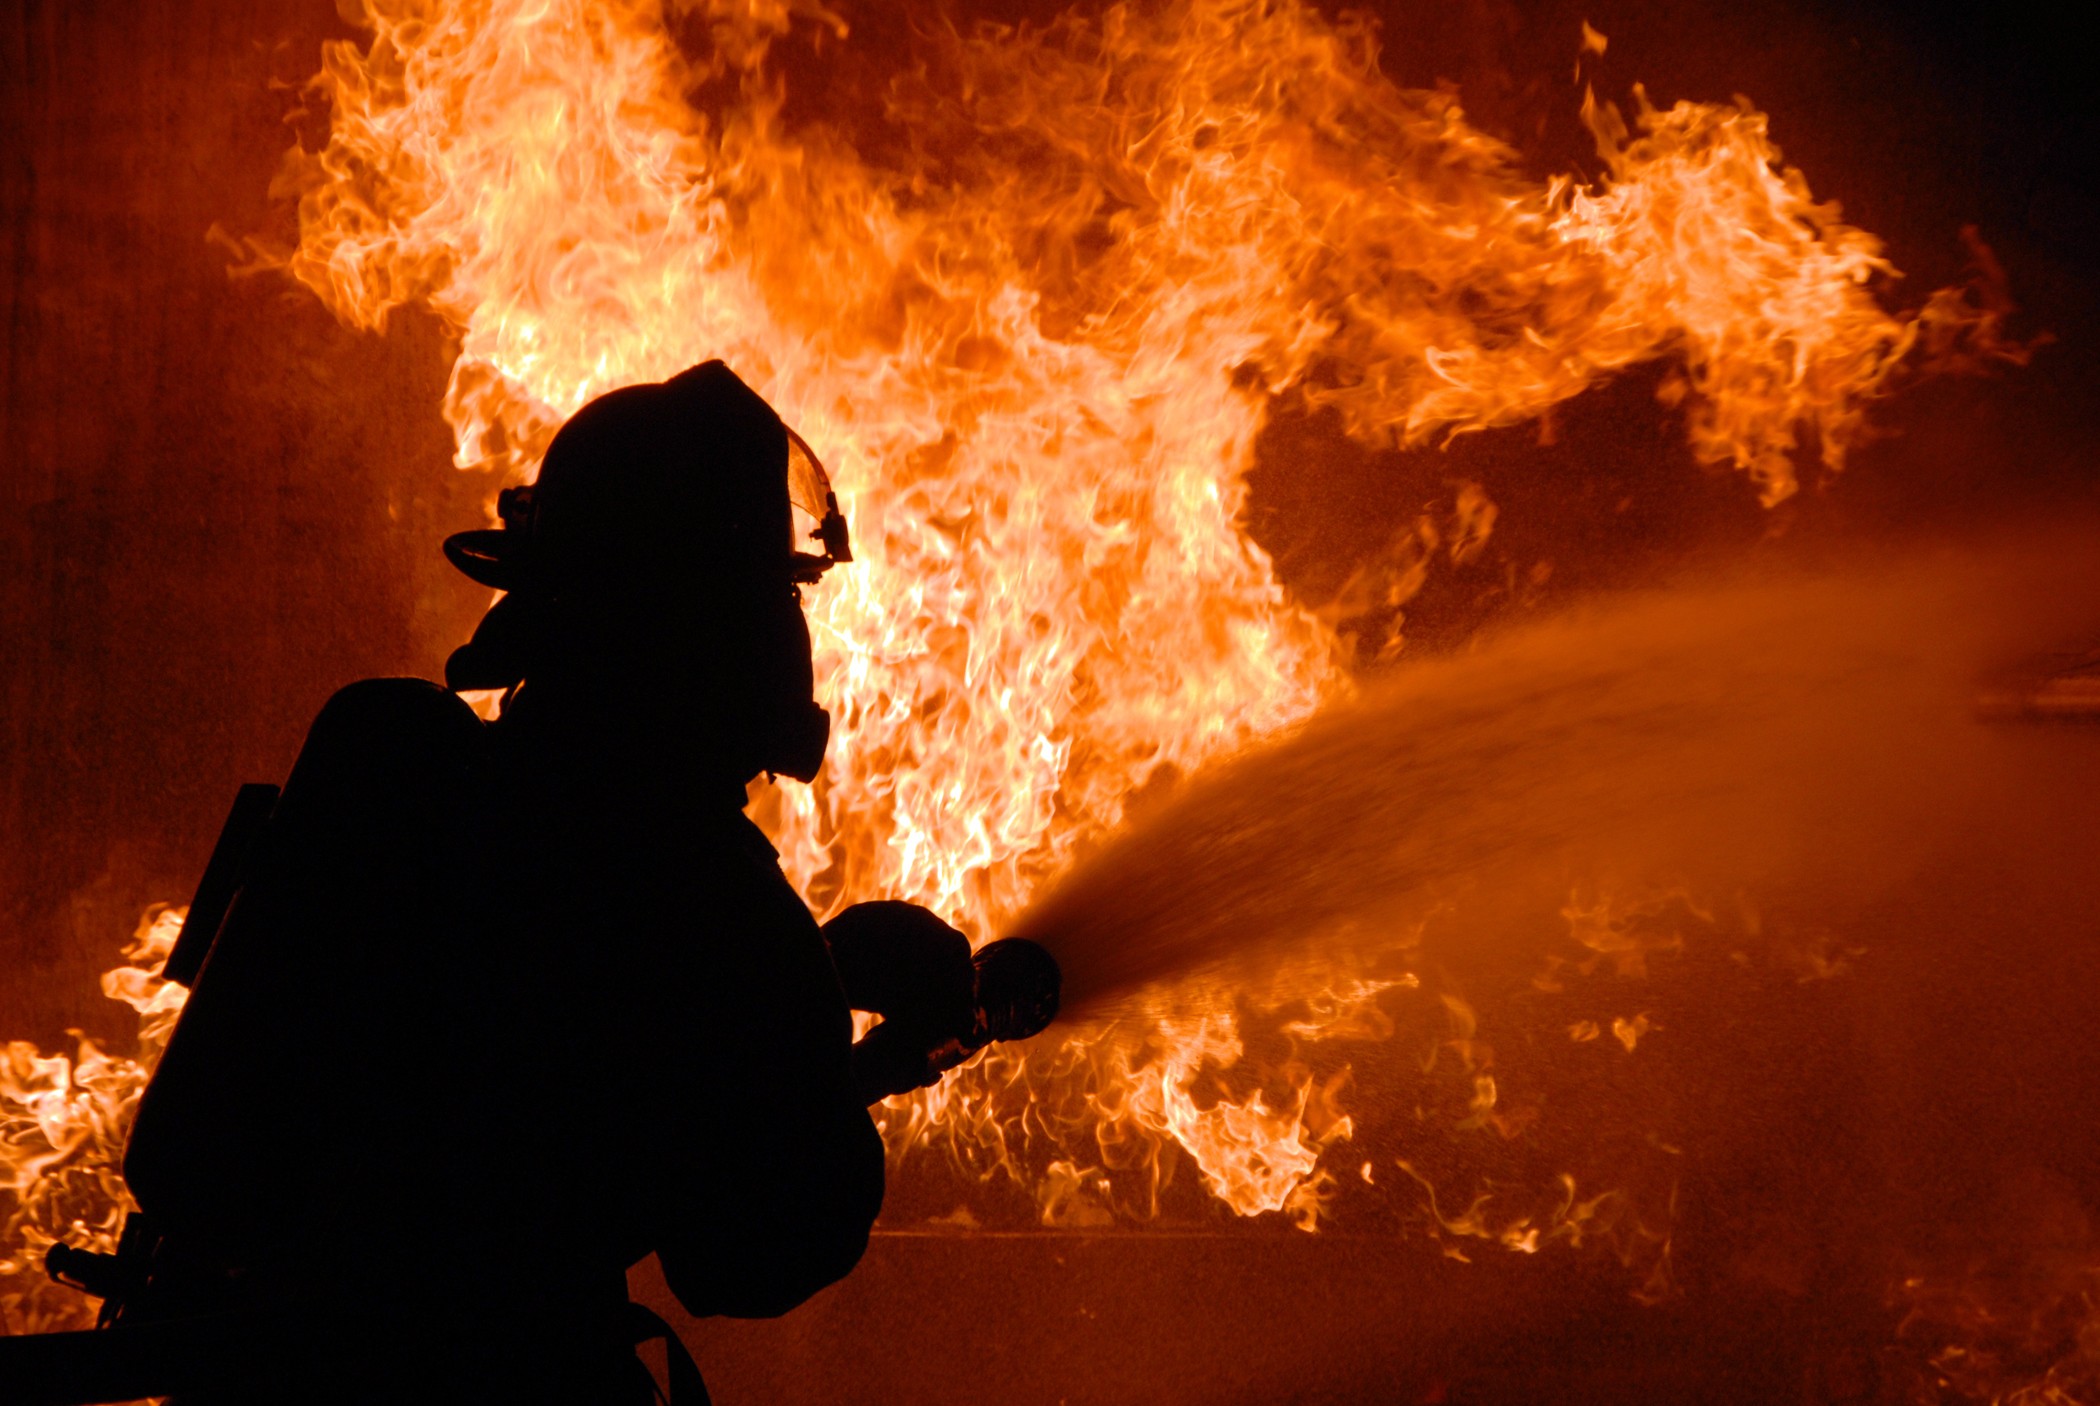 18 жовтня о 22:34 до Служби порятунку Рахівщини надійшло повідомлення про пожежу у надвірній споруді в смт Великий Бичків. 